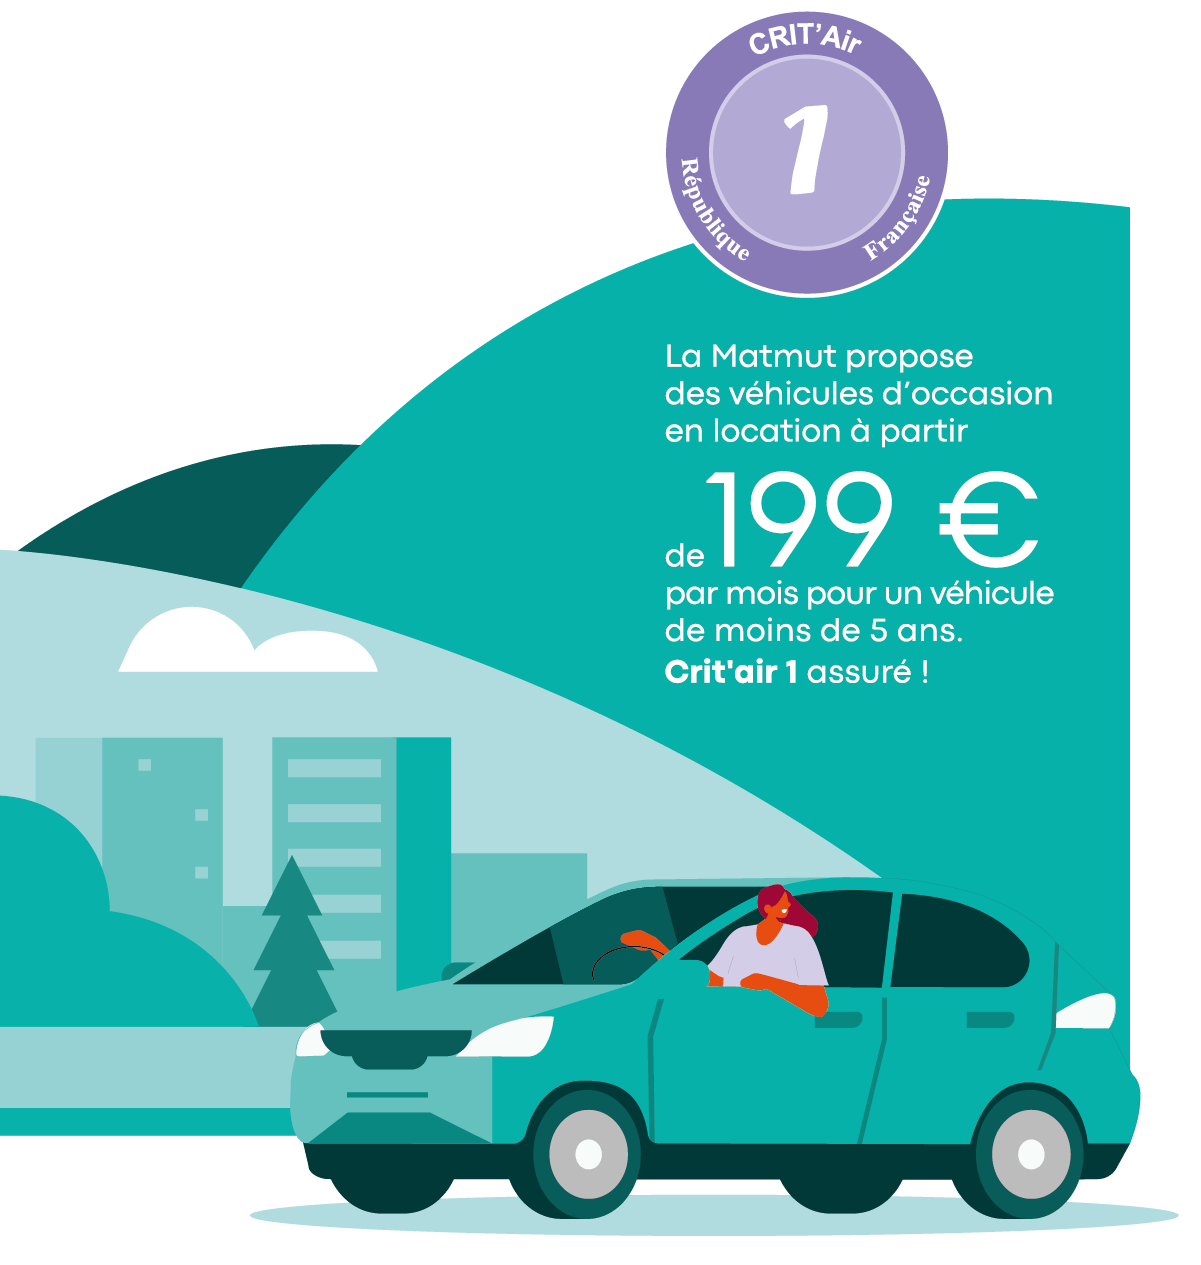 La Matmut propose des véhicules d’occasion en location à partir de 199 € par mois pour un véhicule de moins de 5 ans. Crit'air 1 assuré ! Rèpublique Française